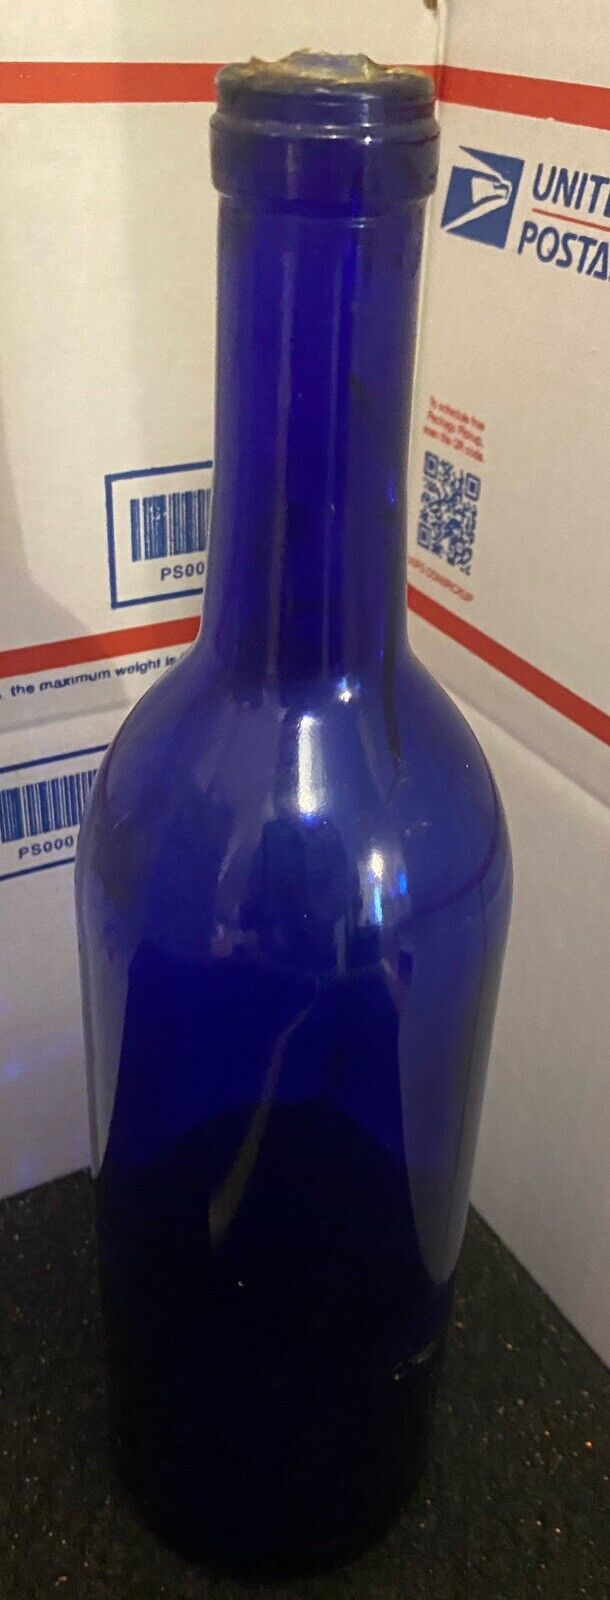 Cobalt Blue Wine Bottle (Vintage) 750ml Bordeaux For Wine Making